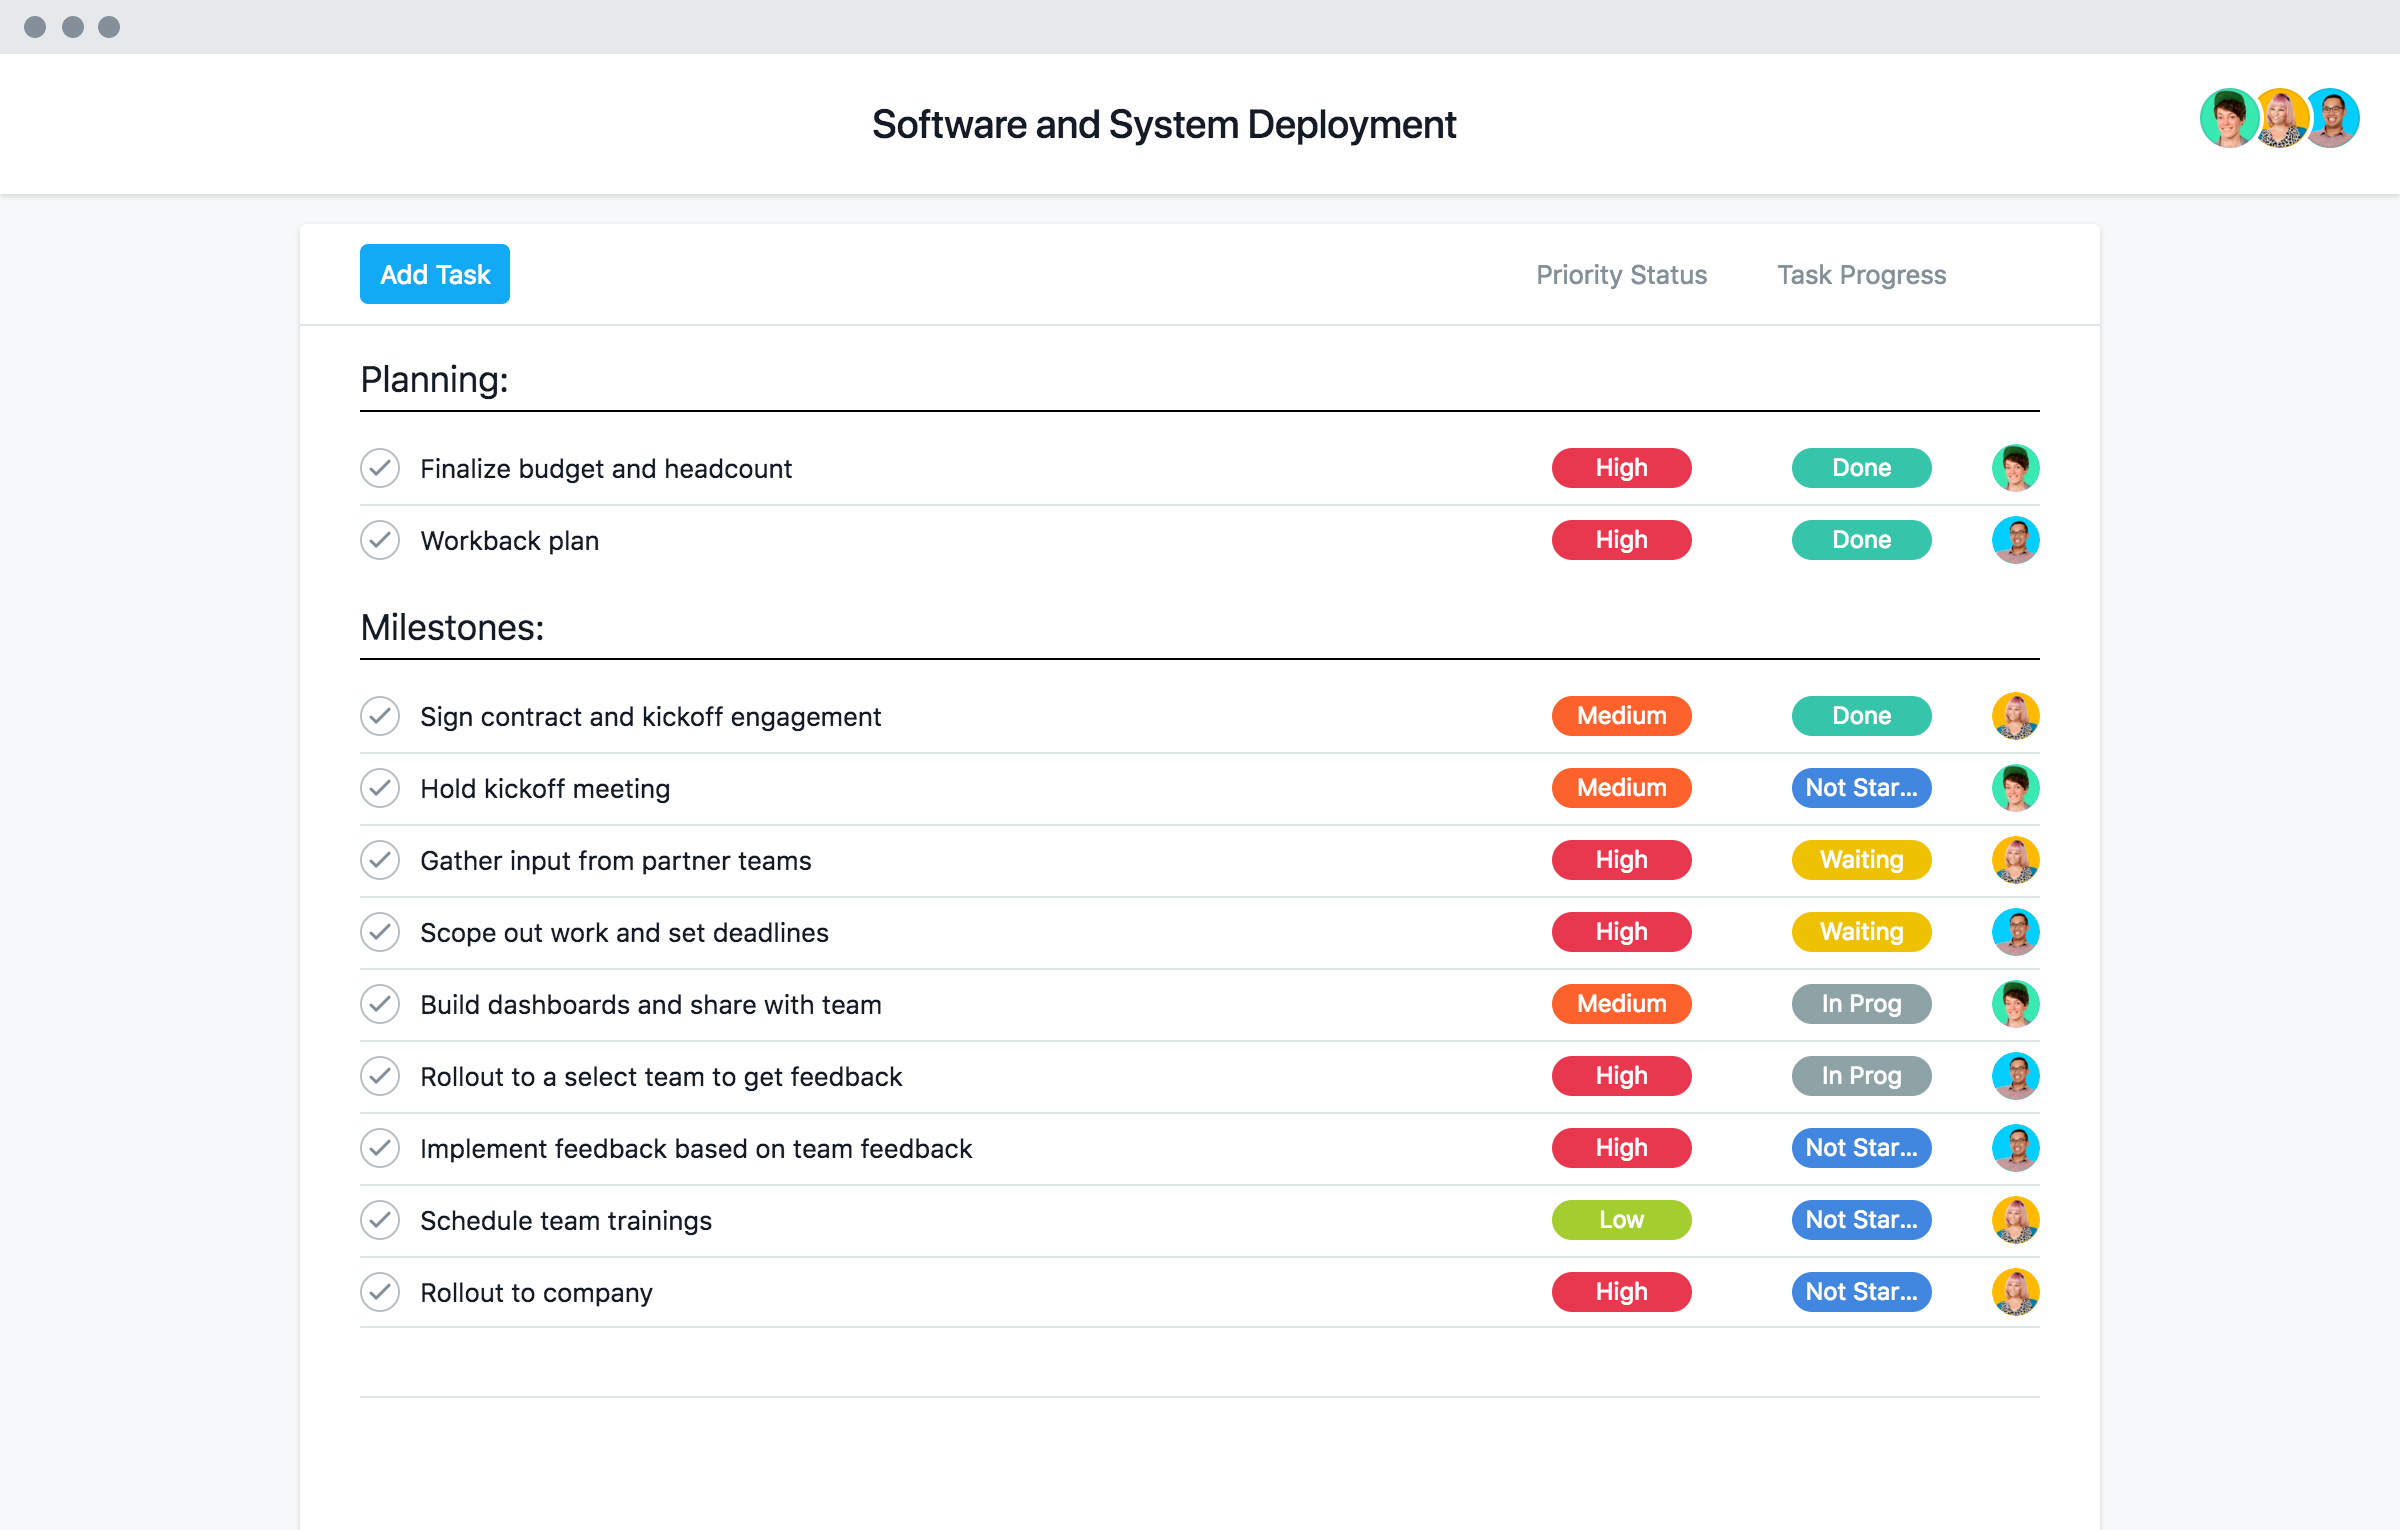 [Plantillas] Implementación de software y sistemas (imagen)